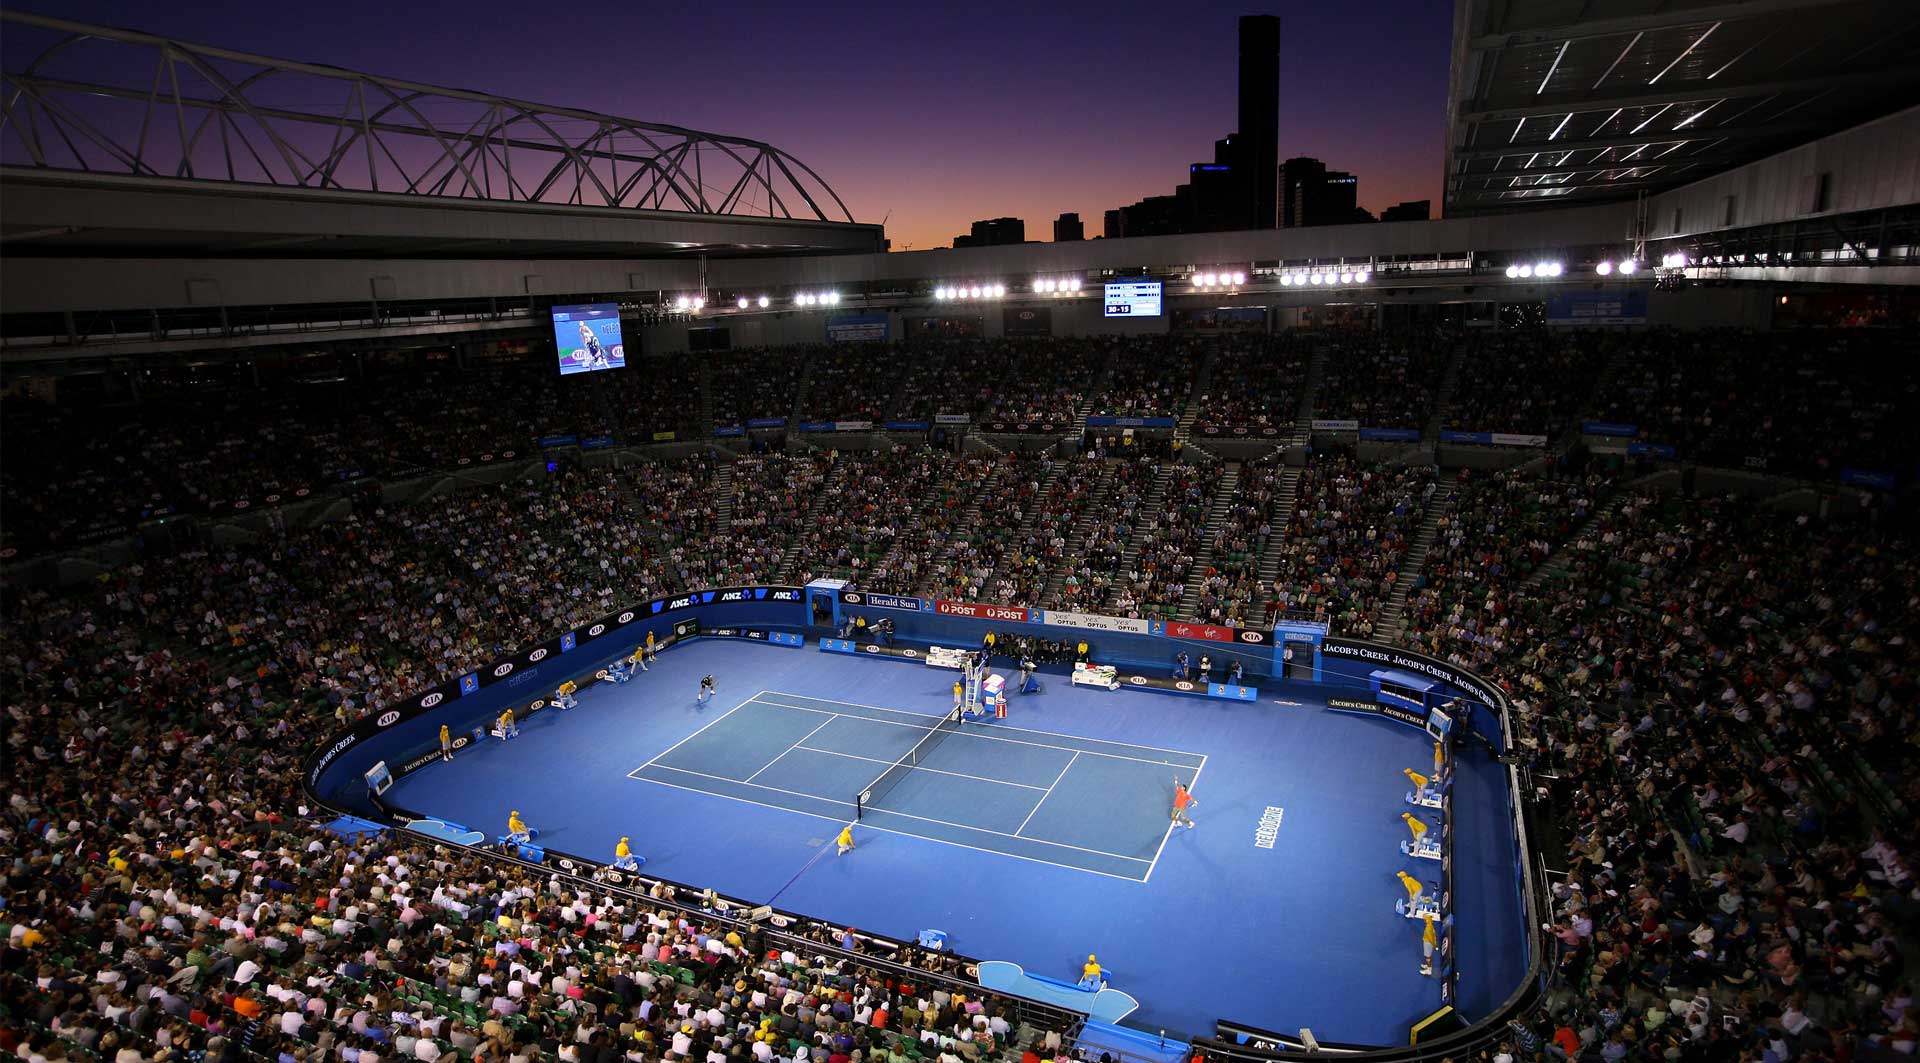 Tenis Abierto de Australia estrenará "superdesempate" a 10 puntos en